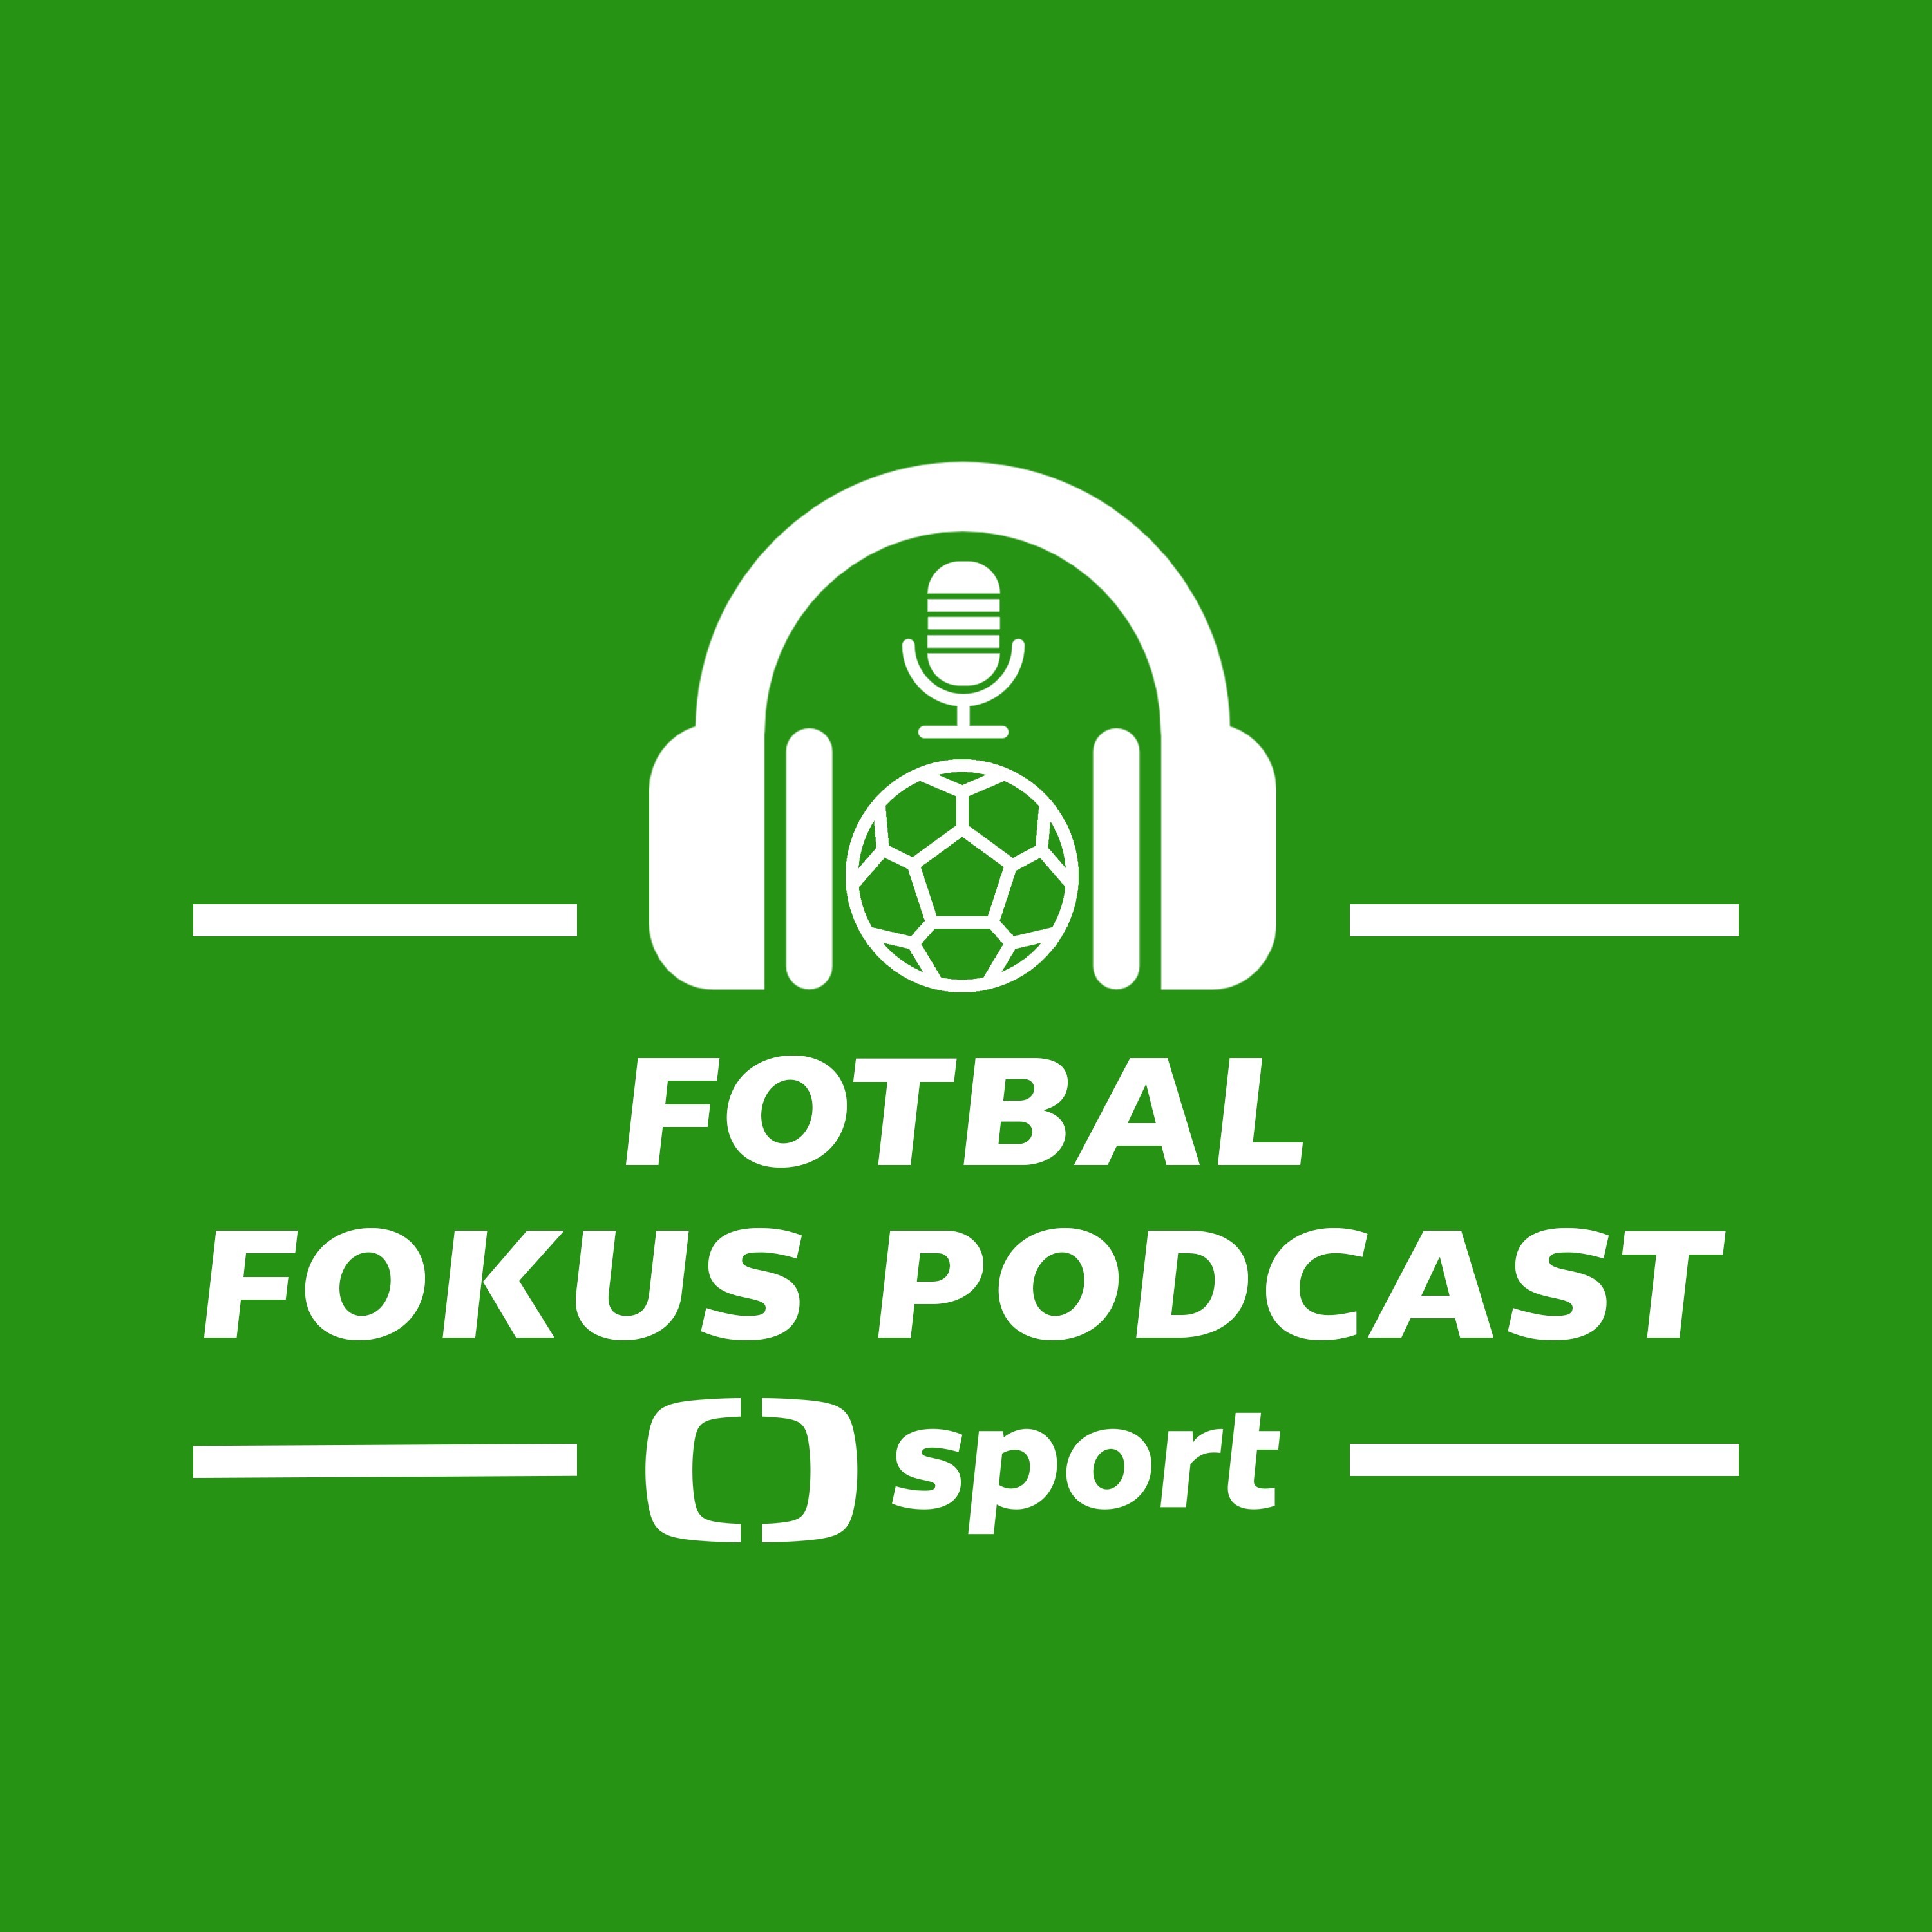 Fotbal fokus podcast: Který odchod by Slavii nadělal největší potíže a jsou koronazměny správné?